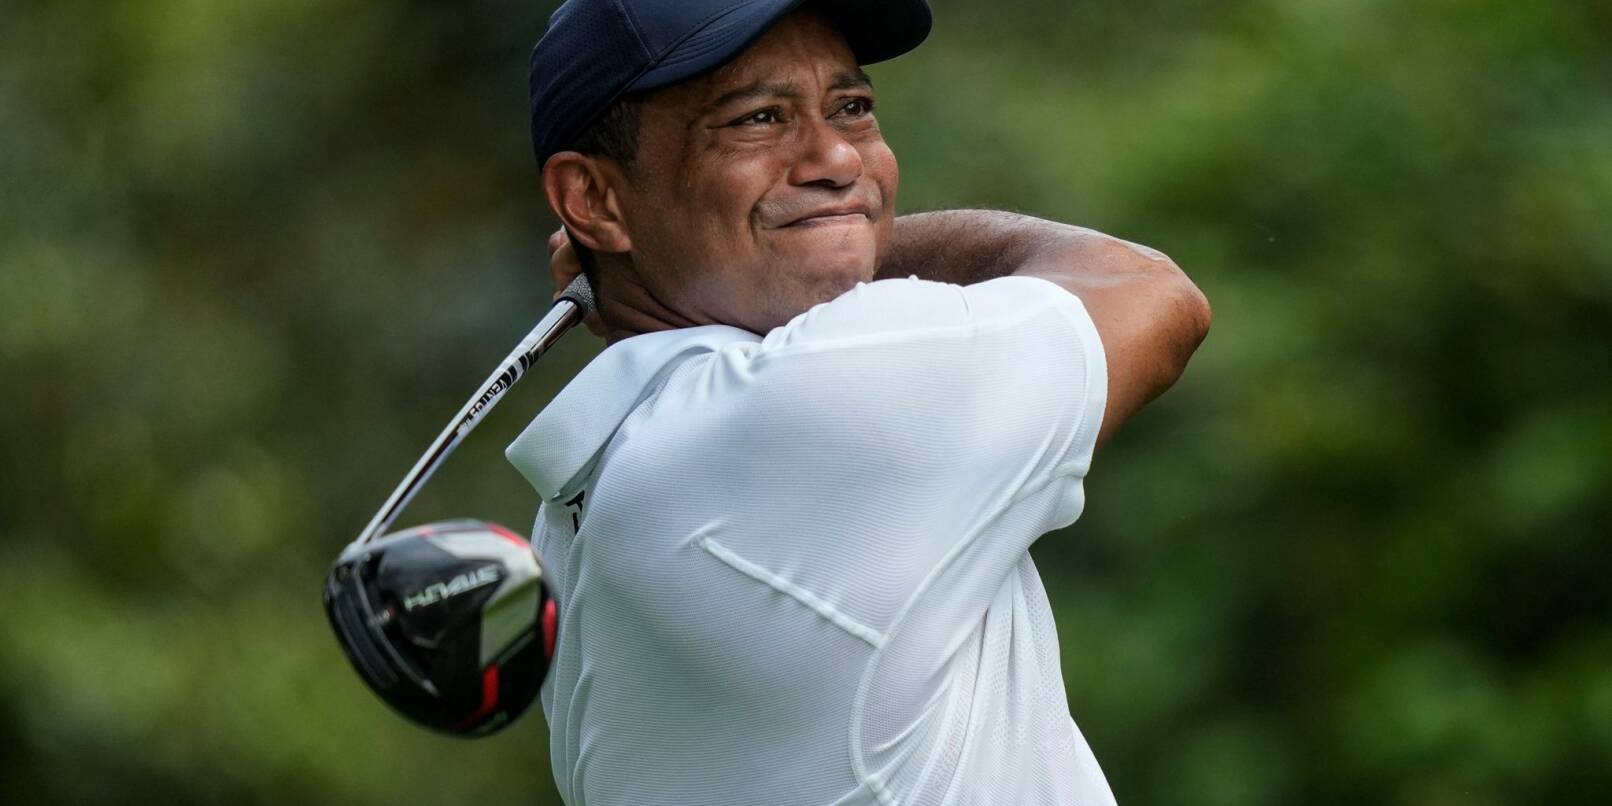 Musste am Fuß operiert werden: Golf-Star Tiger Woods.